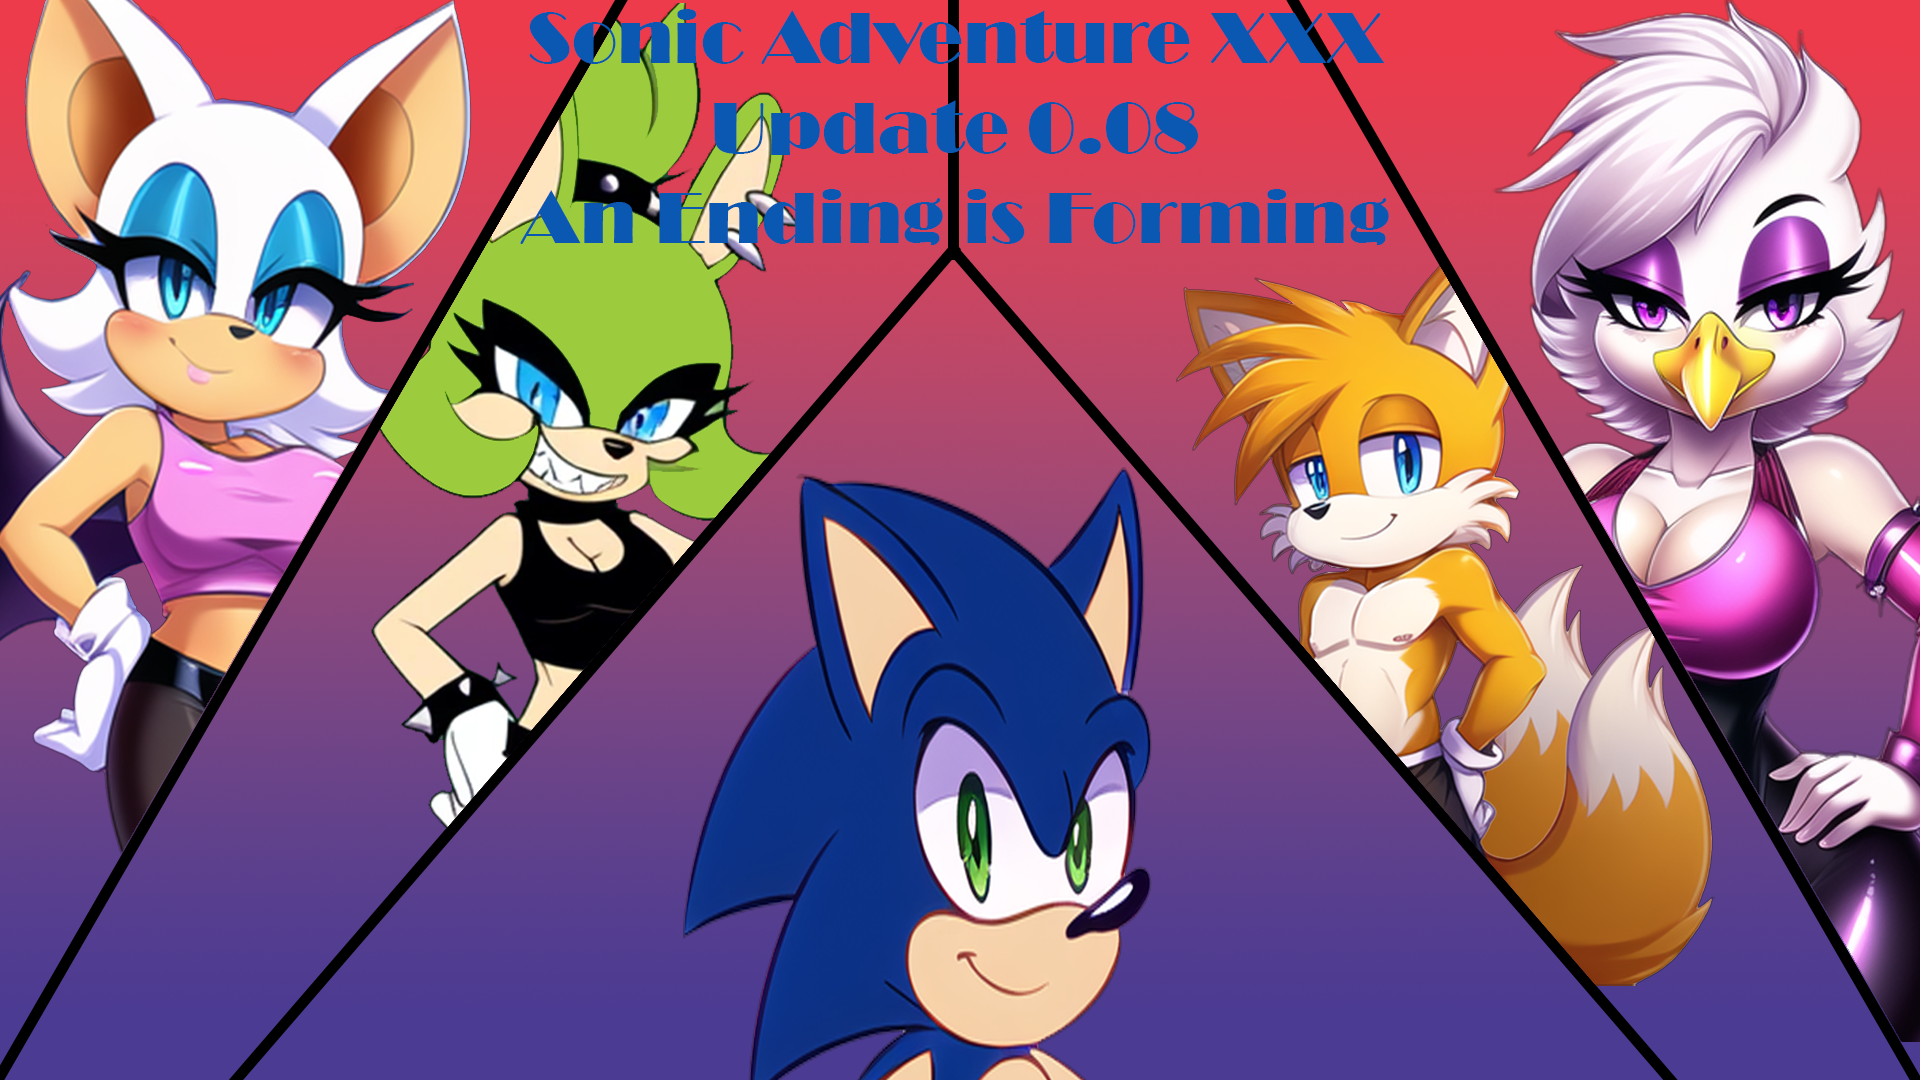 Sonic Adventure XXX 0.08